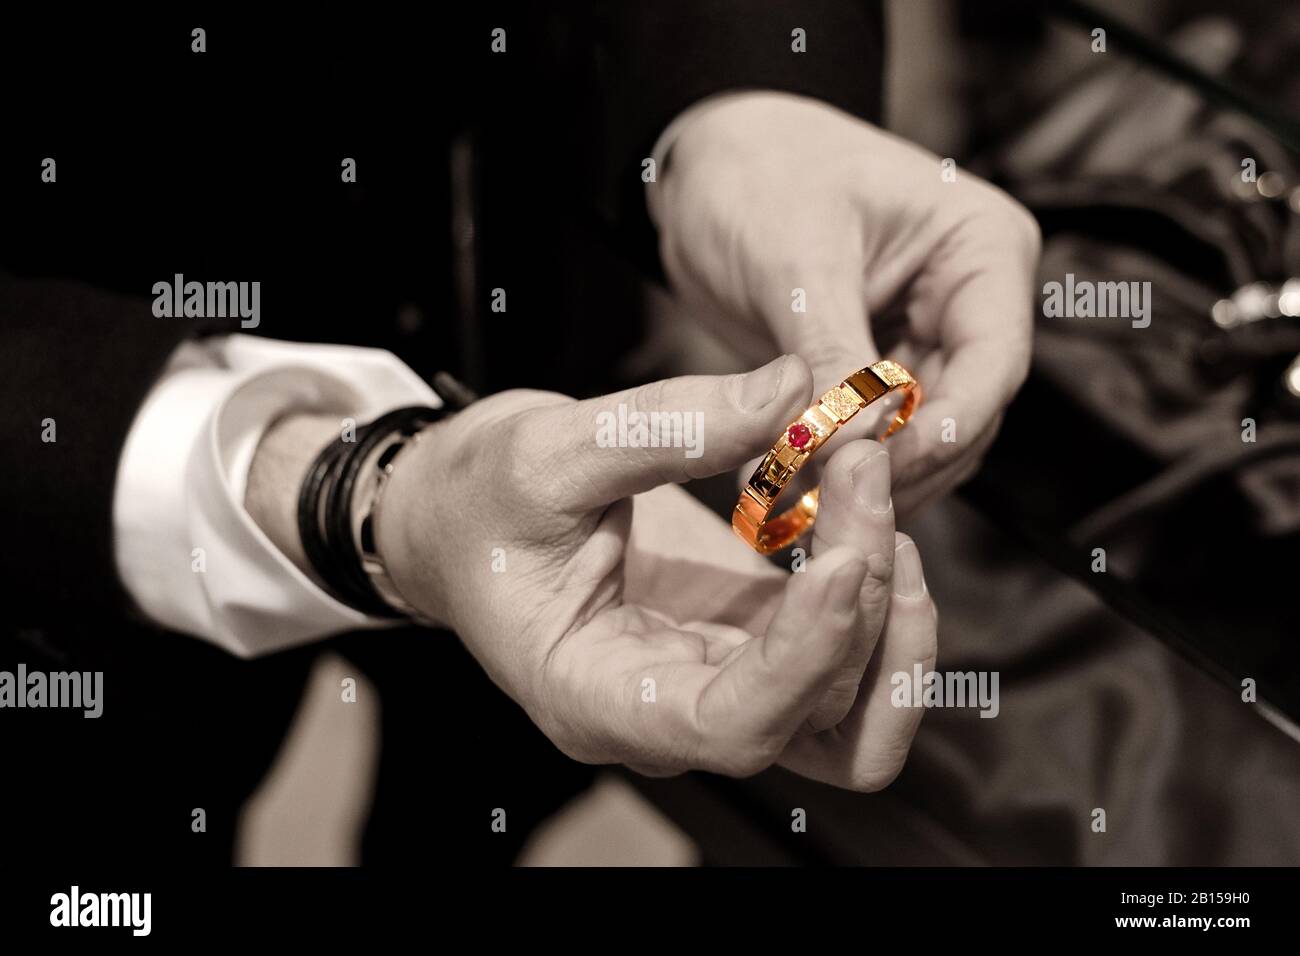 Les mains de Stefano Canturi montrant un bracelet en or et saphir à une présentation spéciale de bijoux de luxe et de la fête du déjeuner Canturi à Sydney Banque D'Images